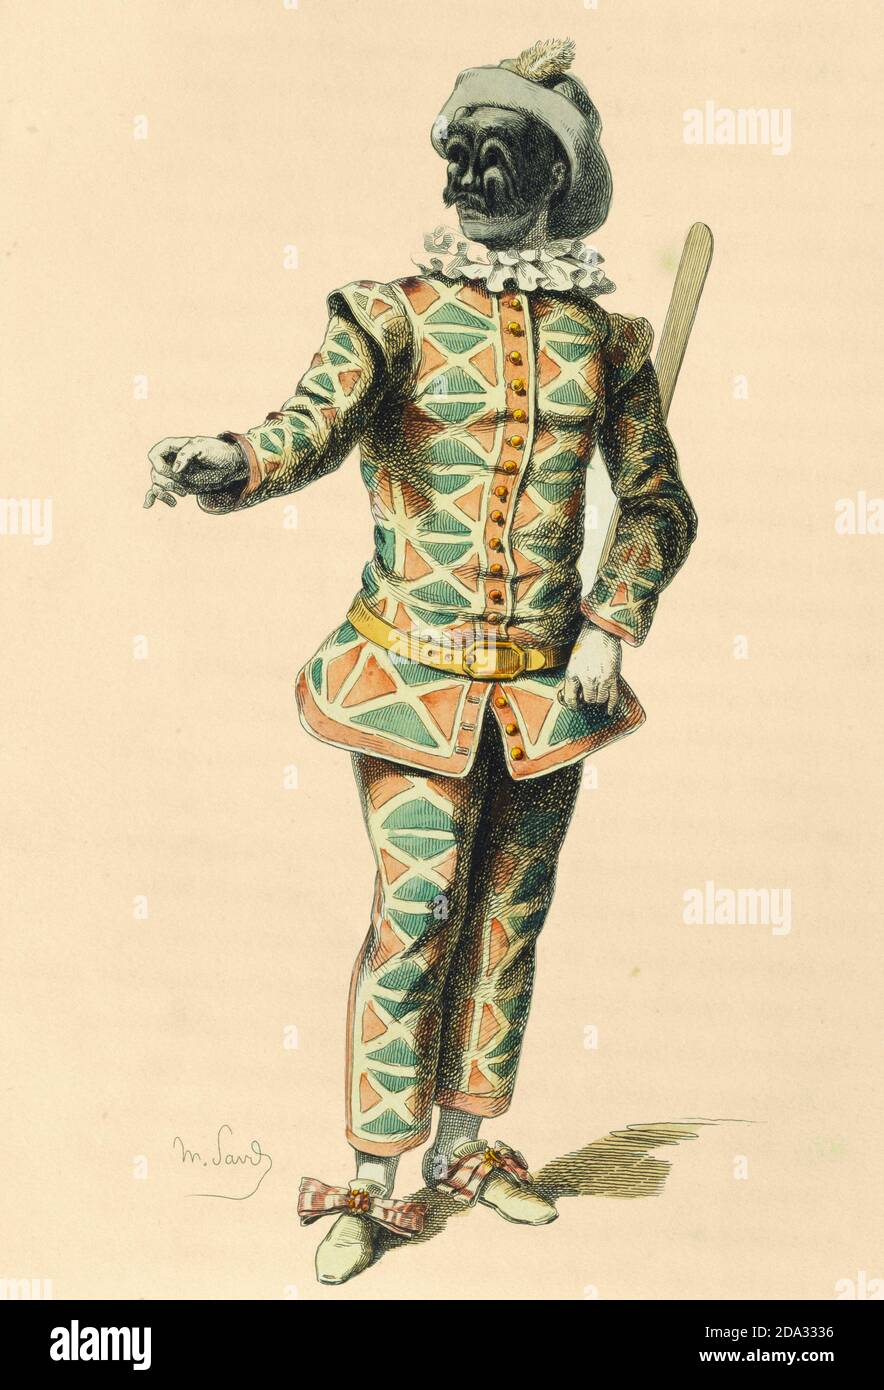 Harlequin - disegno di Maurice Sand, pubblicato nel 1860. Commedia dell' Arte carattere Foto Stock